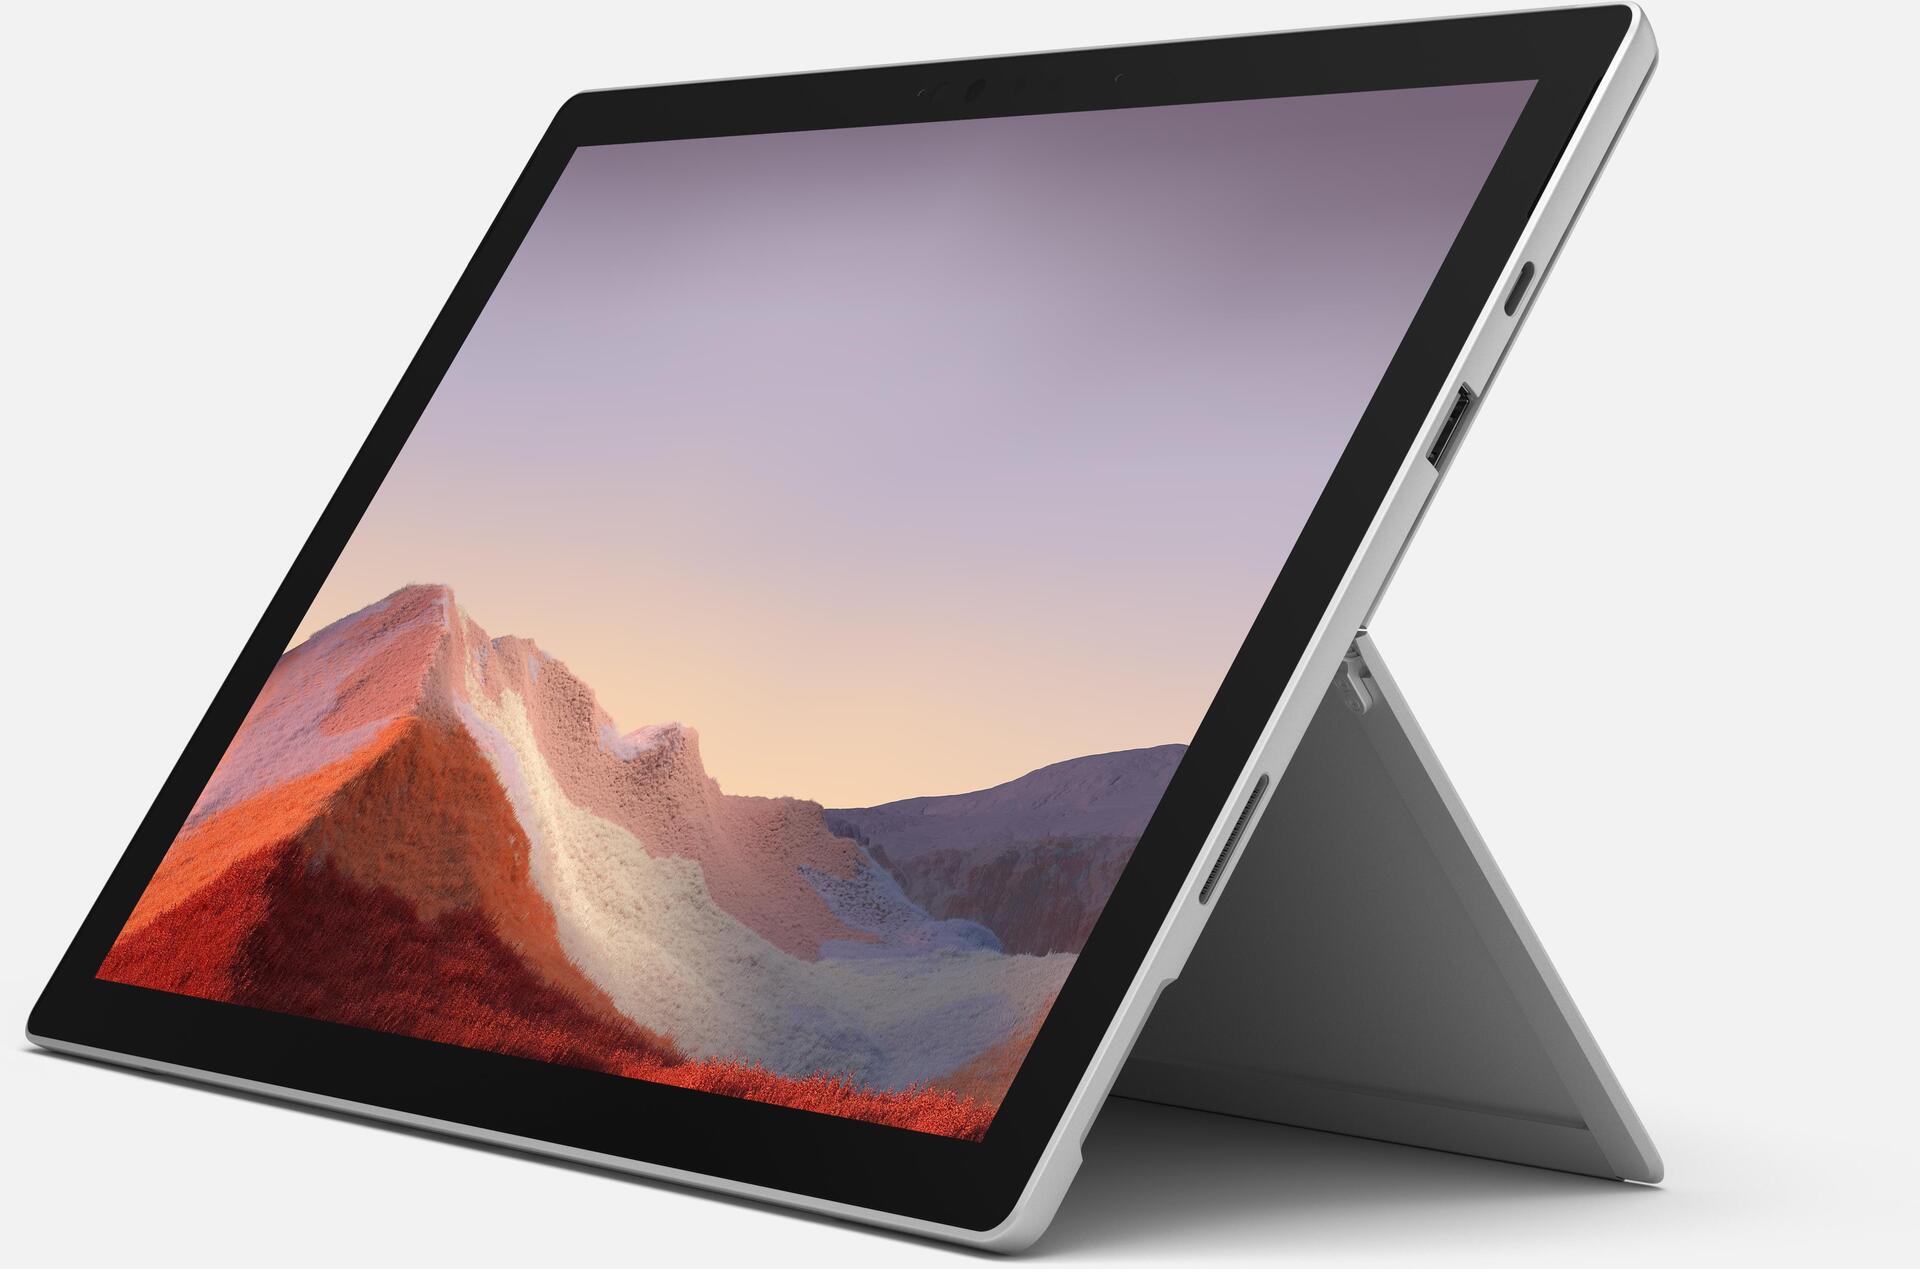 Microsoft Surface Pro 7 (VDV-00003)